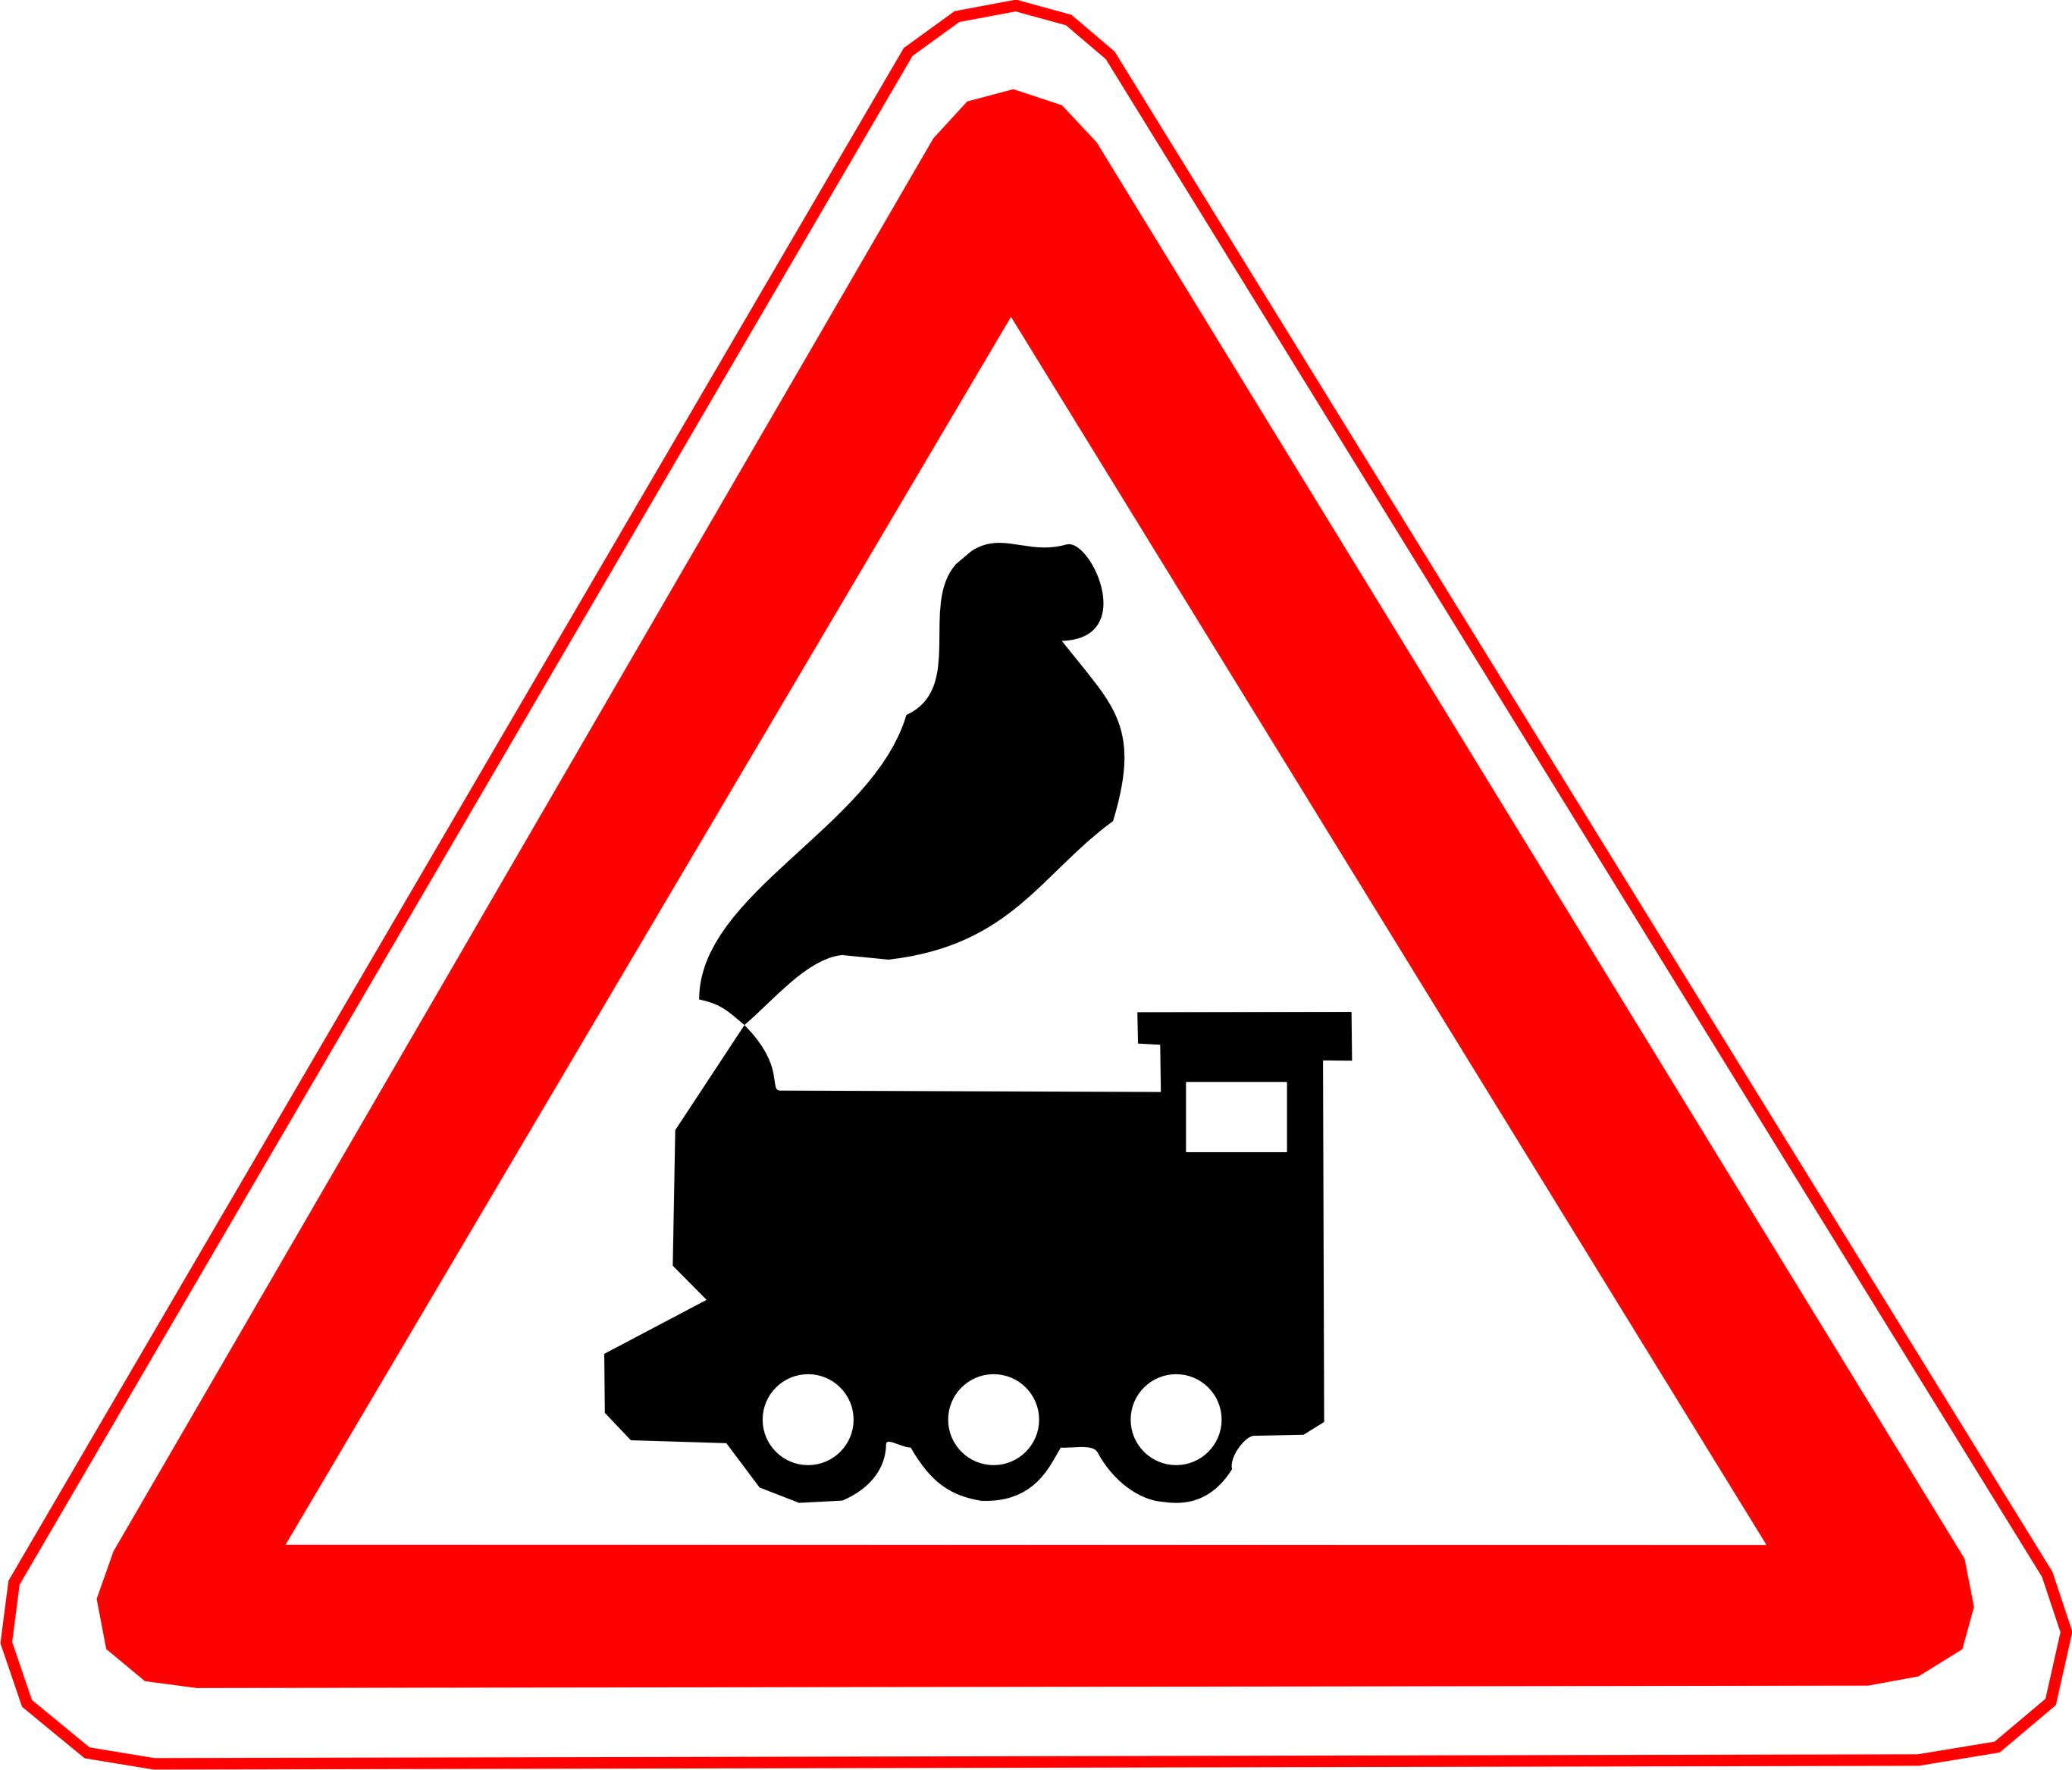 Знак 1.2 5. 1.2 "Железнодорожный переезд без шлагбаума".. Железнодорожный переезд знаки ПДД. Железнодорожный переезд без шлагбаума дорожный знак. Дорожный знак Железнодорожный переезд со шлагбаумом.